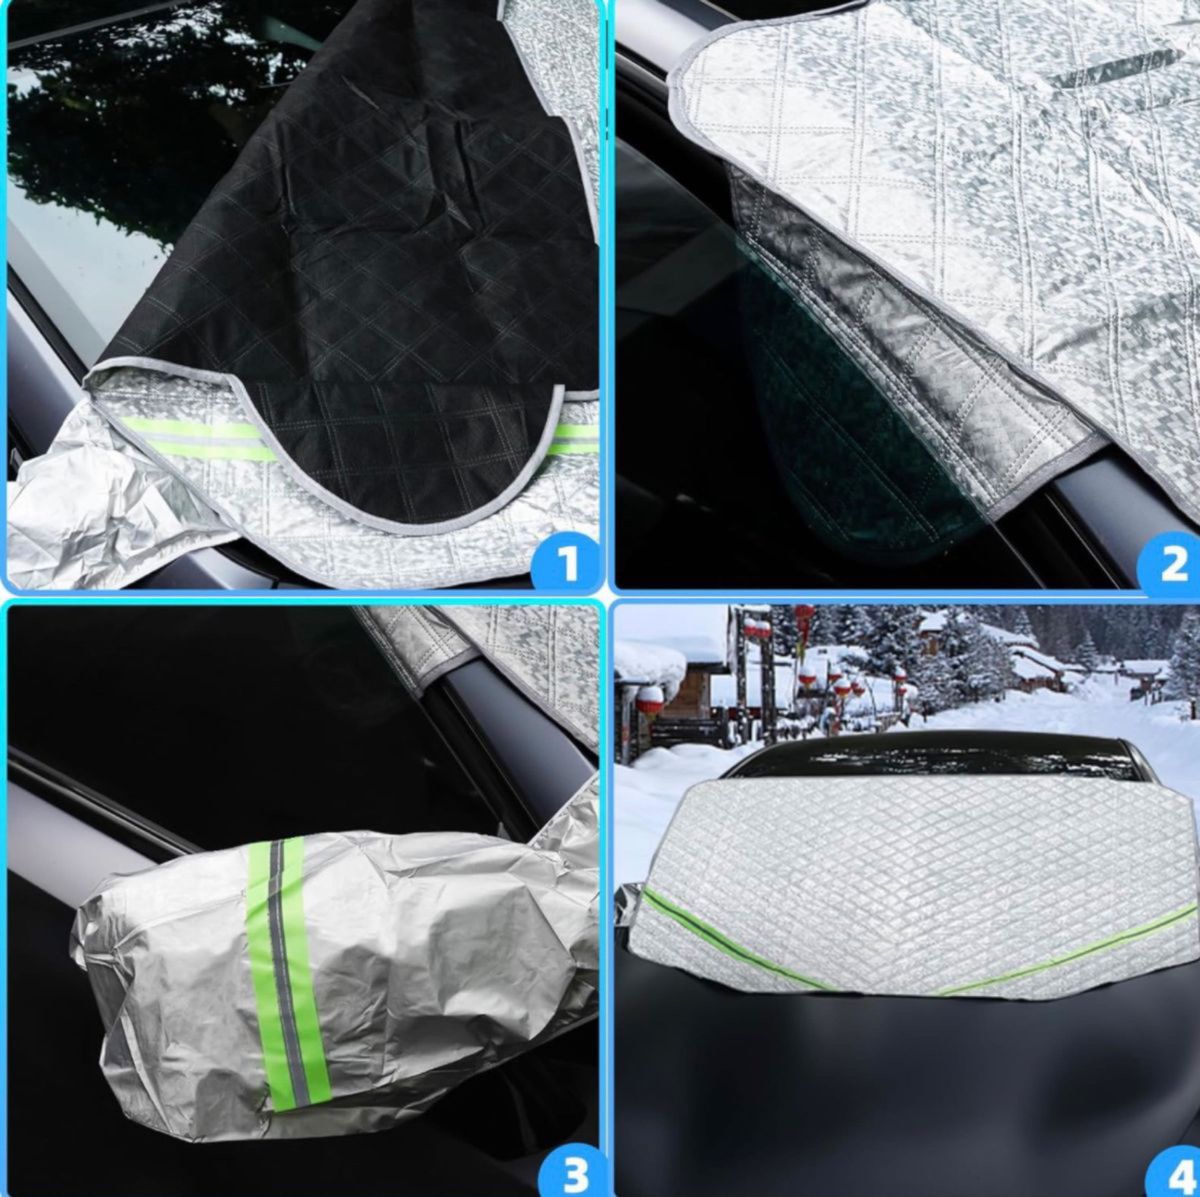 フロントガラス 凍結防止シート フロントガラスカバー 車 フロントカバー 雪対策 防水防氷 四季兼用 （165cm*115cm）